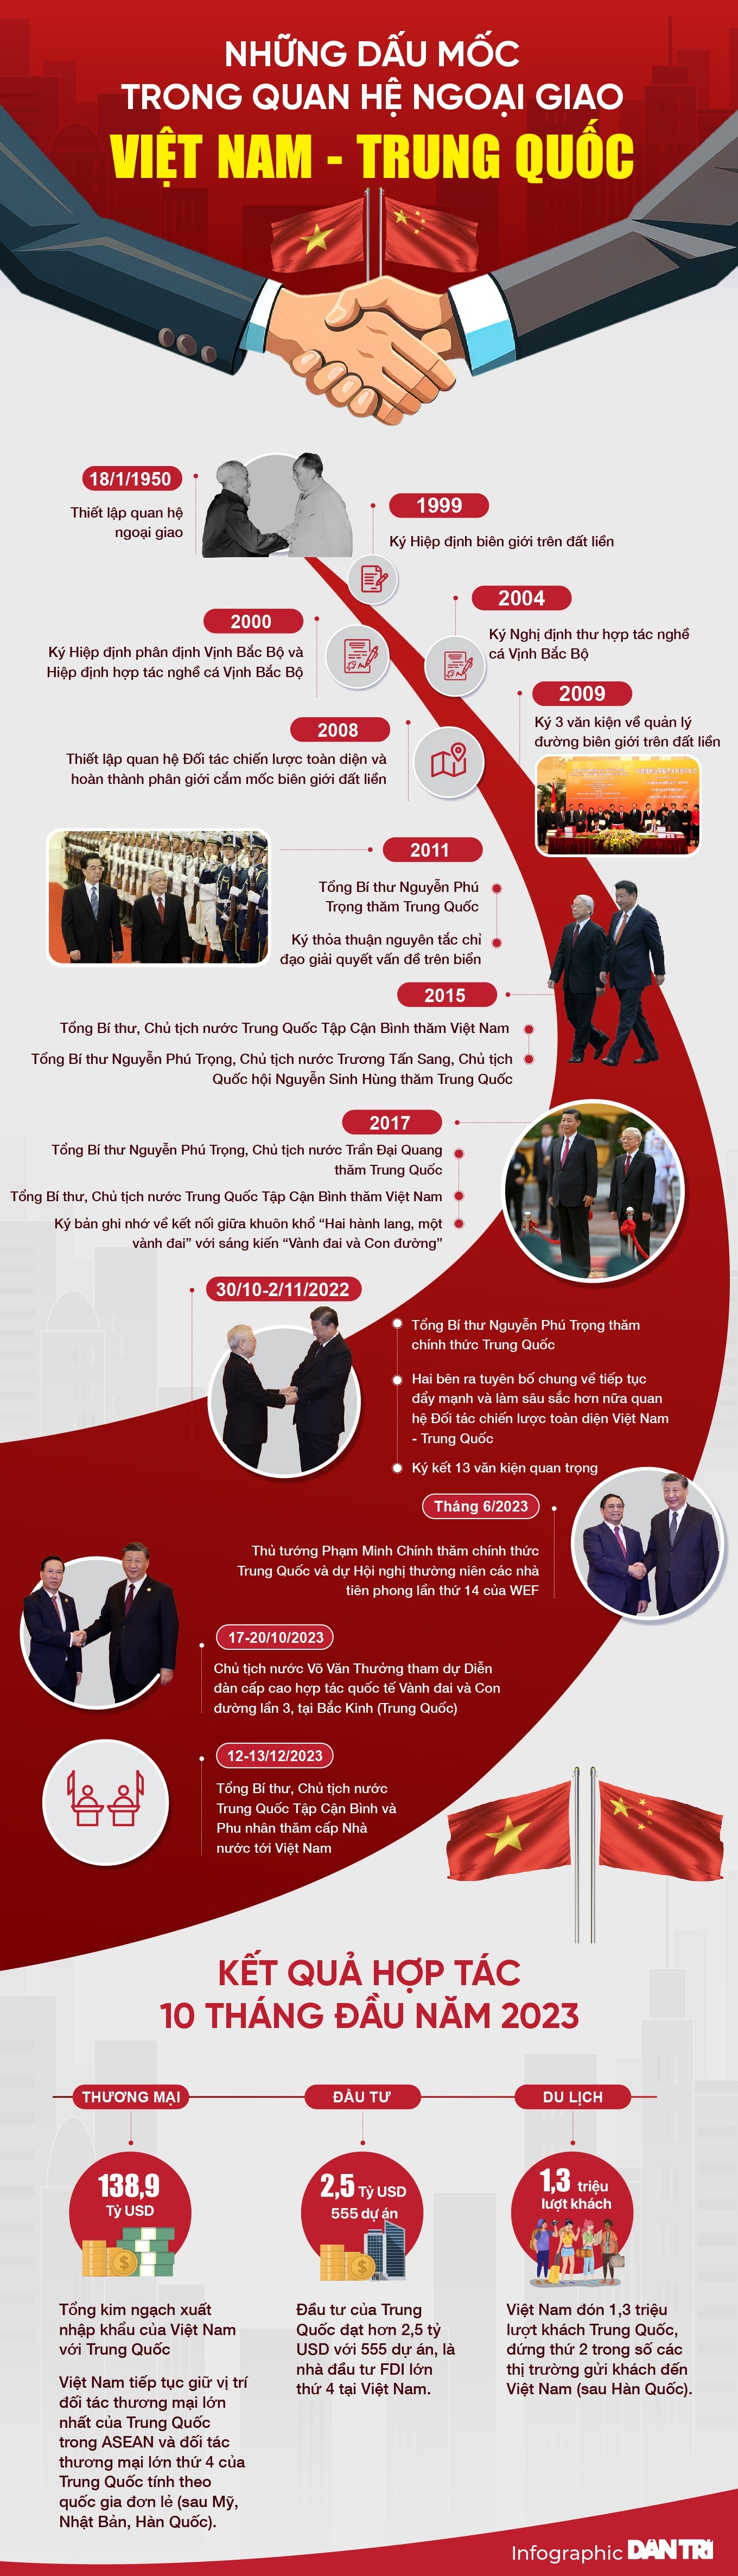 Chủ tịch Quốc hội thăm Trung Quốc: Cụ thể hóa 6 phương hướng hợp tác lớn - 5